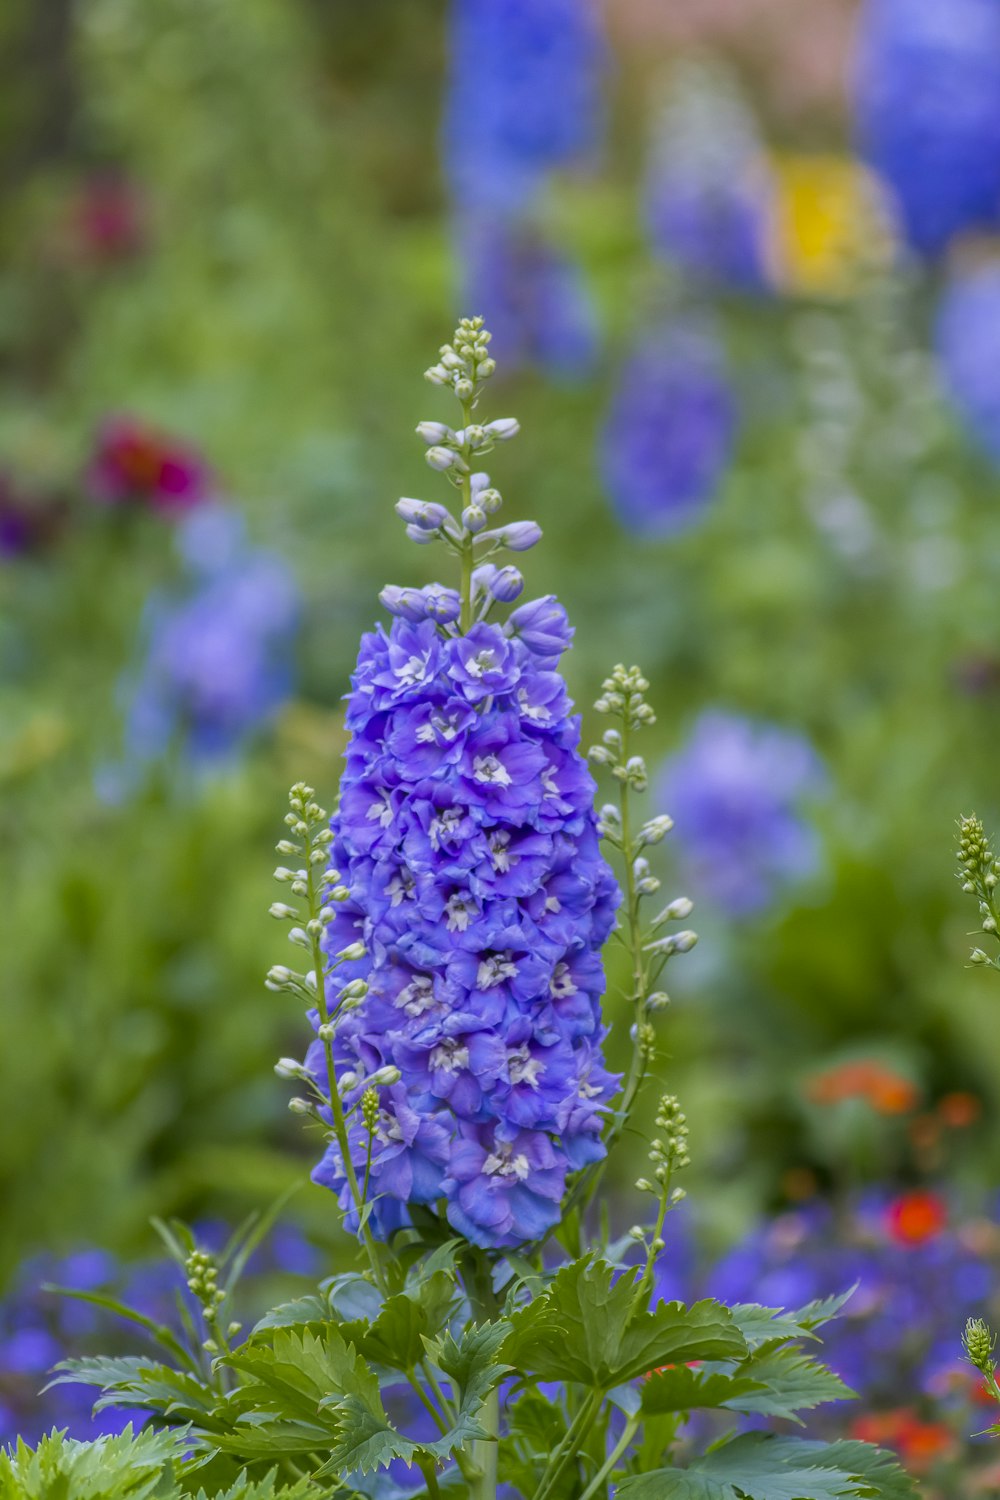 a blue flower in a field of flowers